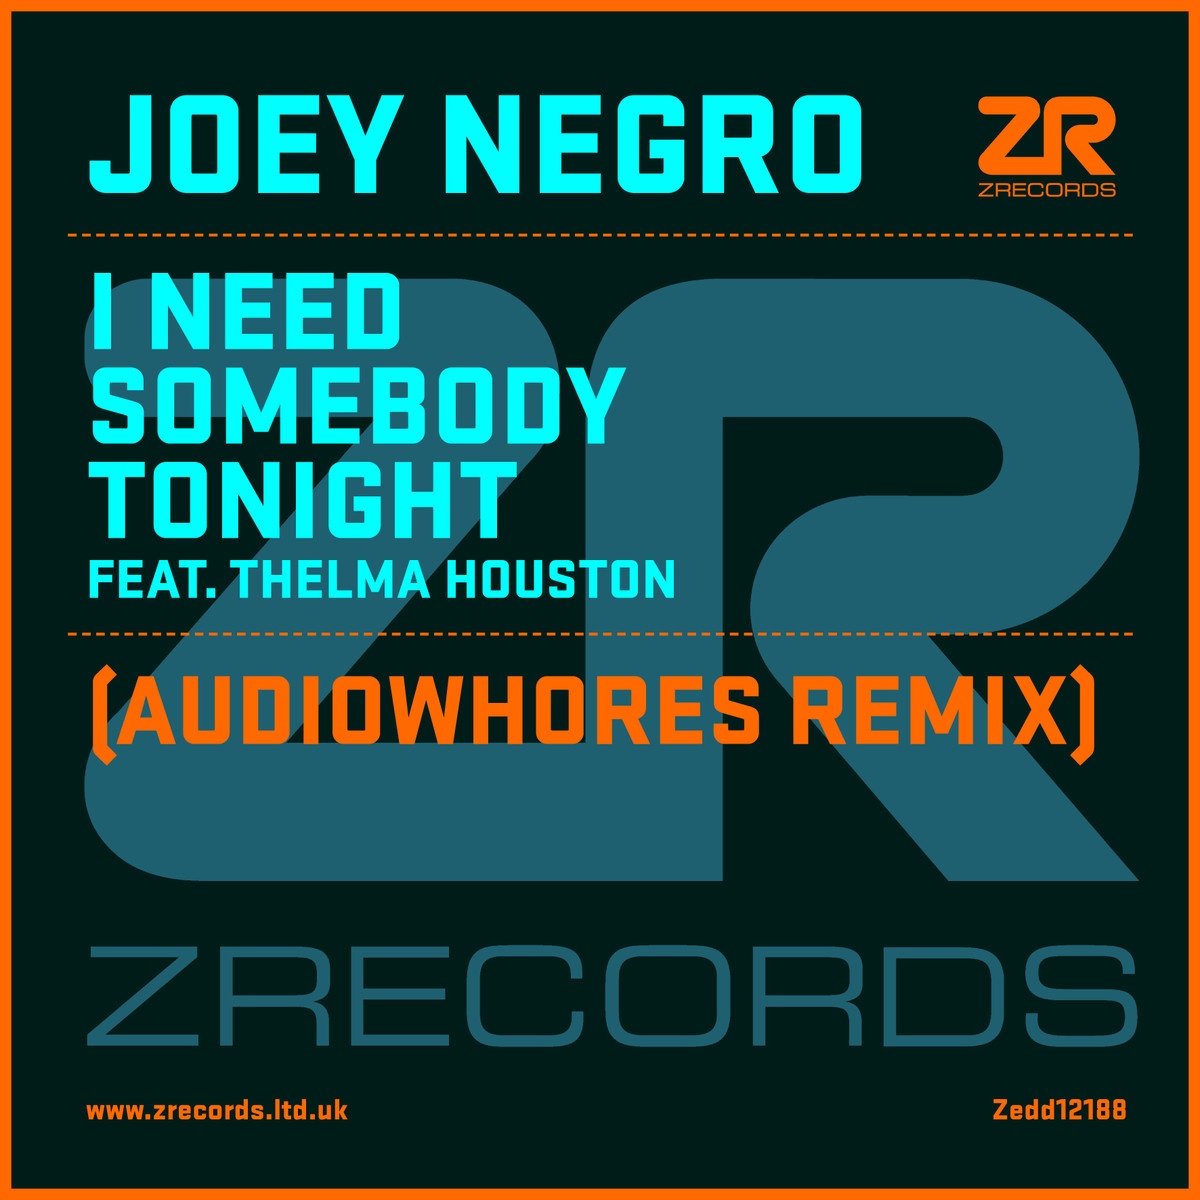 I Need Somebody Tonight Feat. Thelma Houston (Joey Negro Serious Dub)